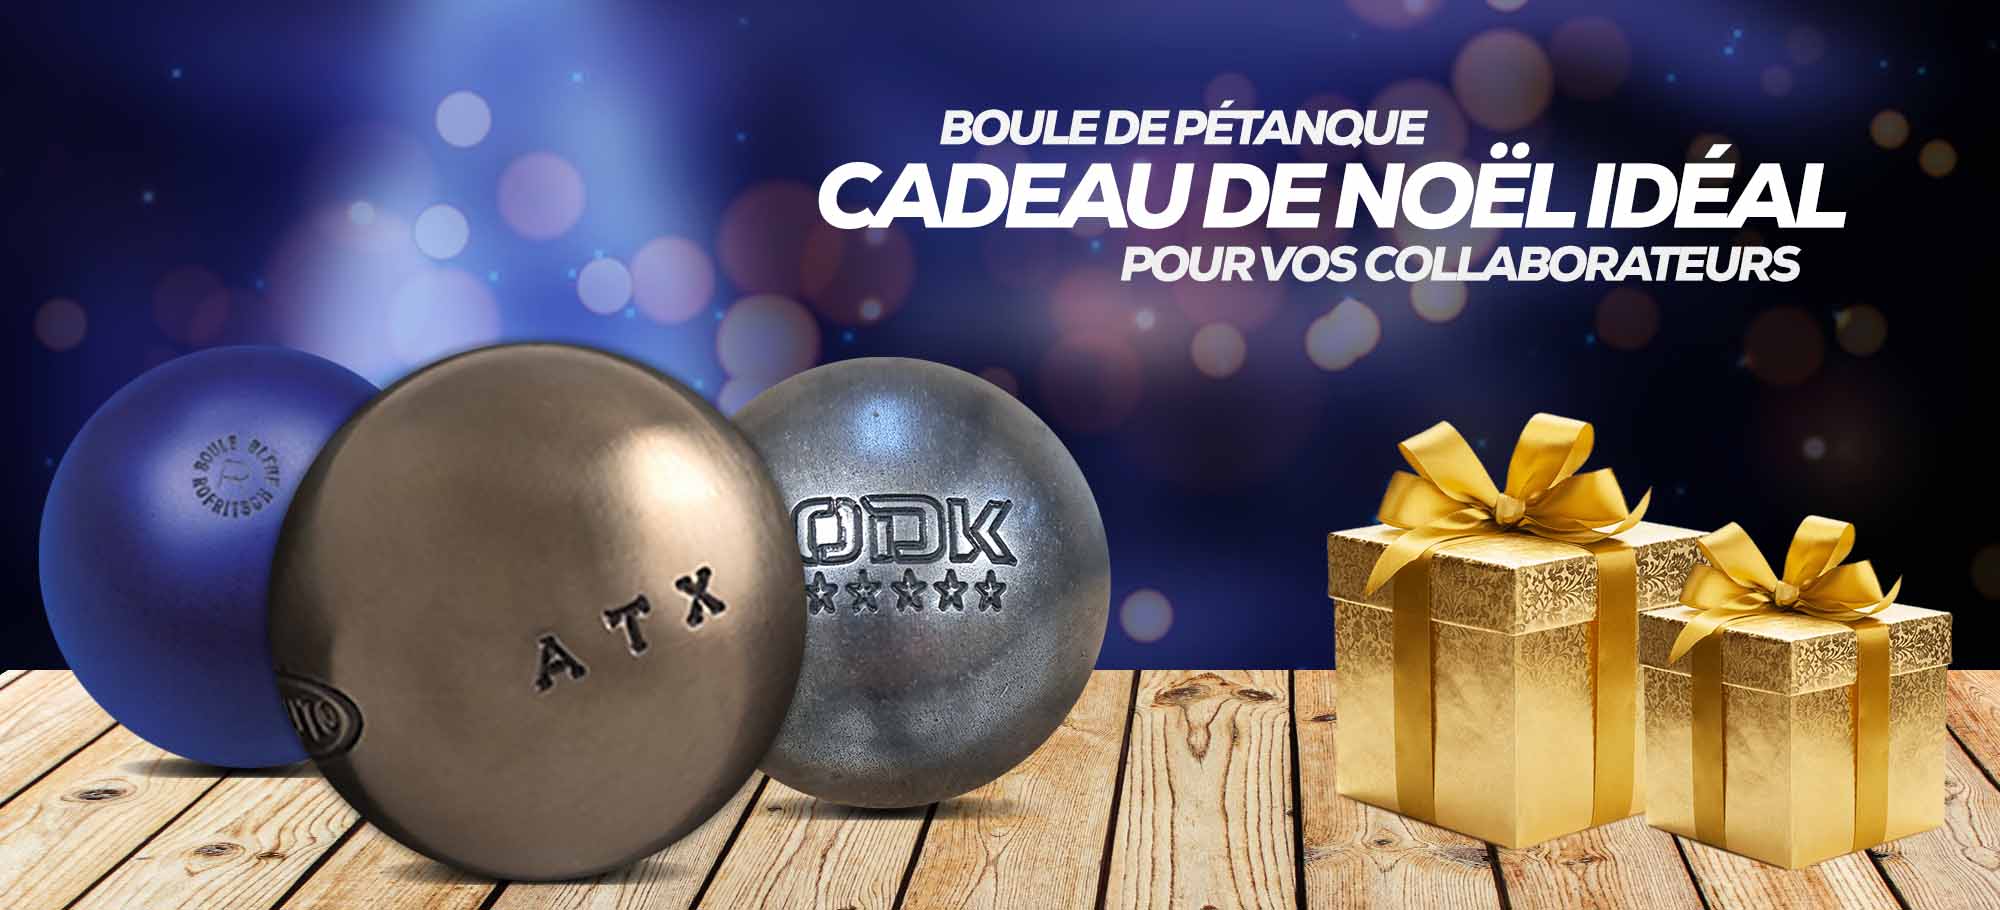 You are currently viewing Boule de pétanque : pourquoi est-ce le cadeau de Noël idéal pour vos collaborateurs ?